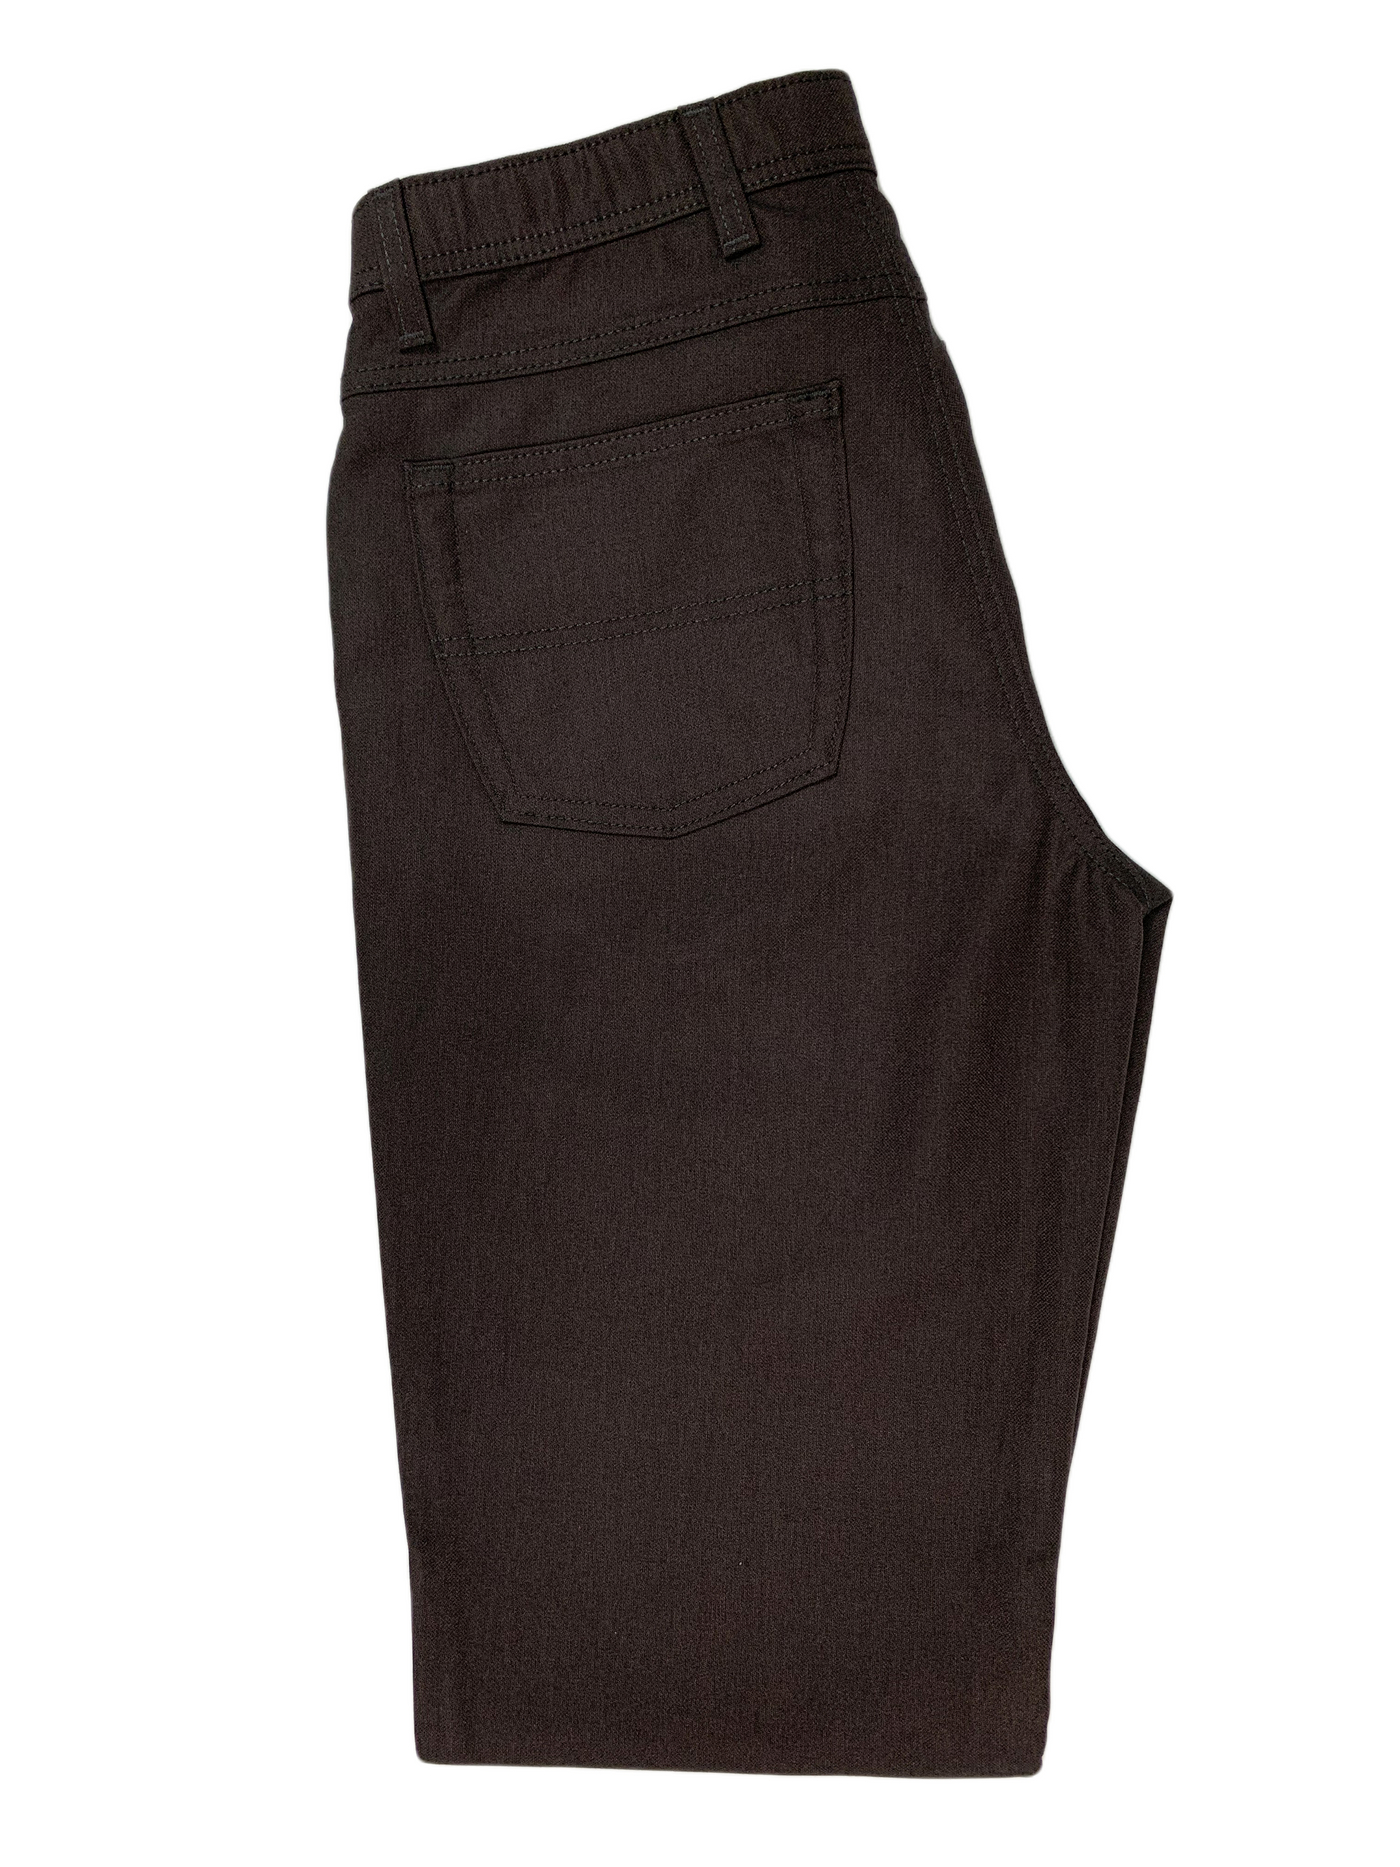 Pantalon bordeaux extensible Boréal coupe semi-ajustée